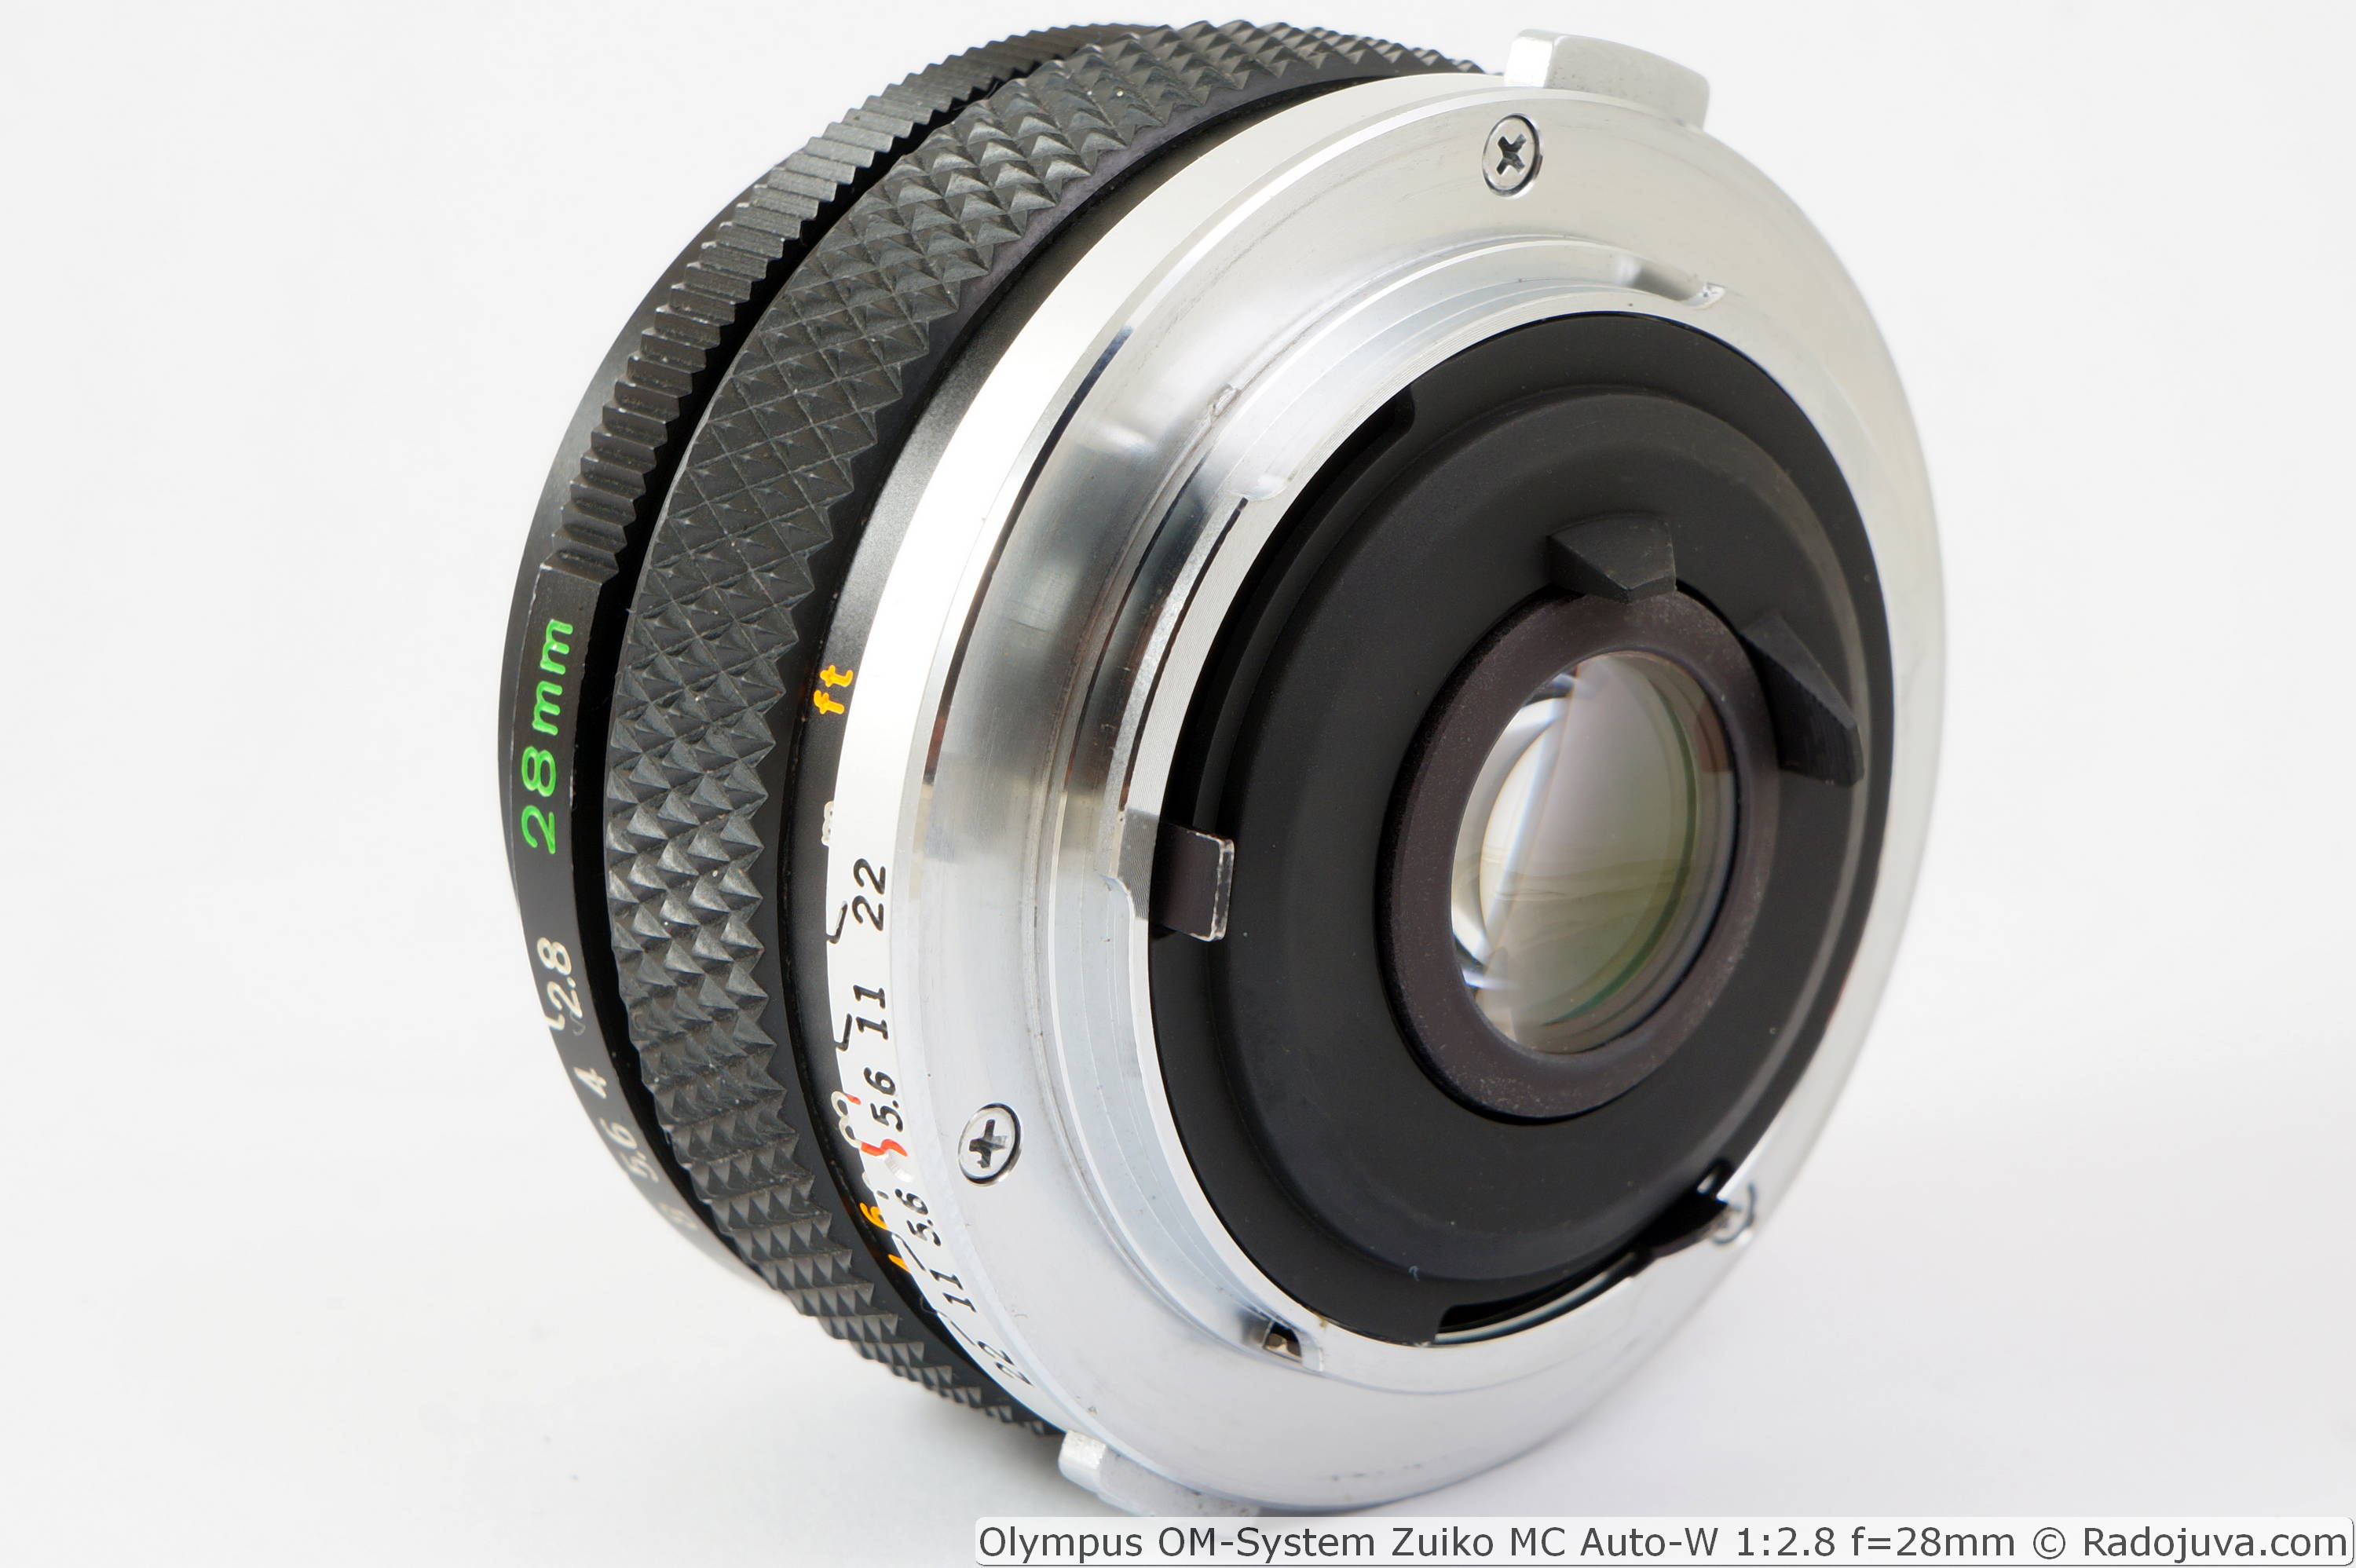 Review of Olympus OM-System Zuiko MC Auto-W 1:2.8 f=28mm | Happy